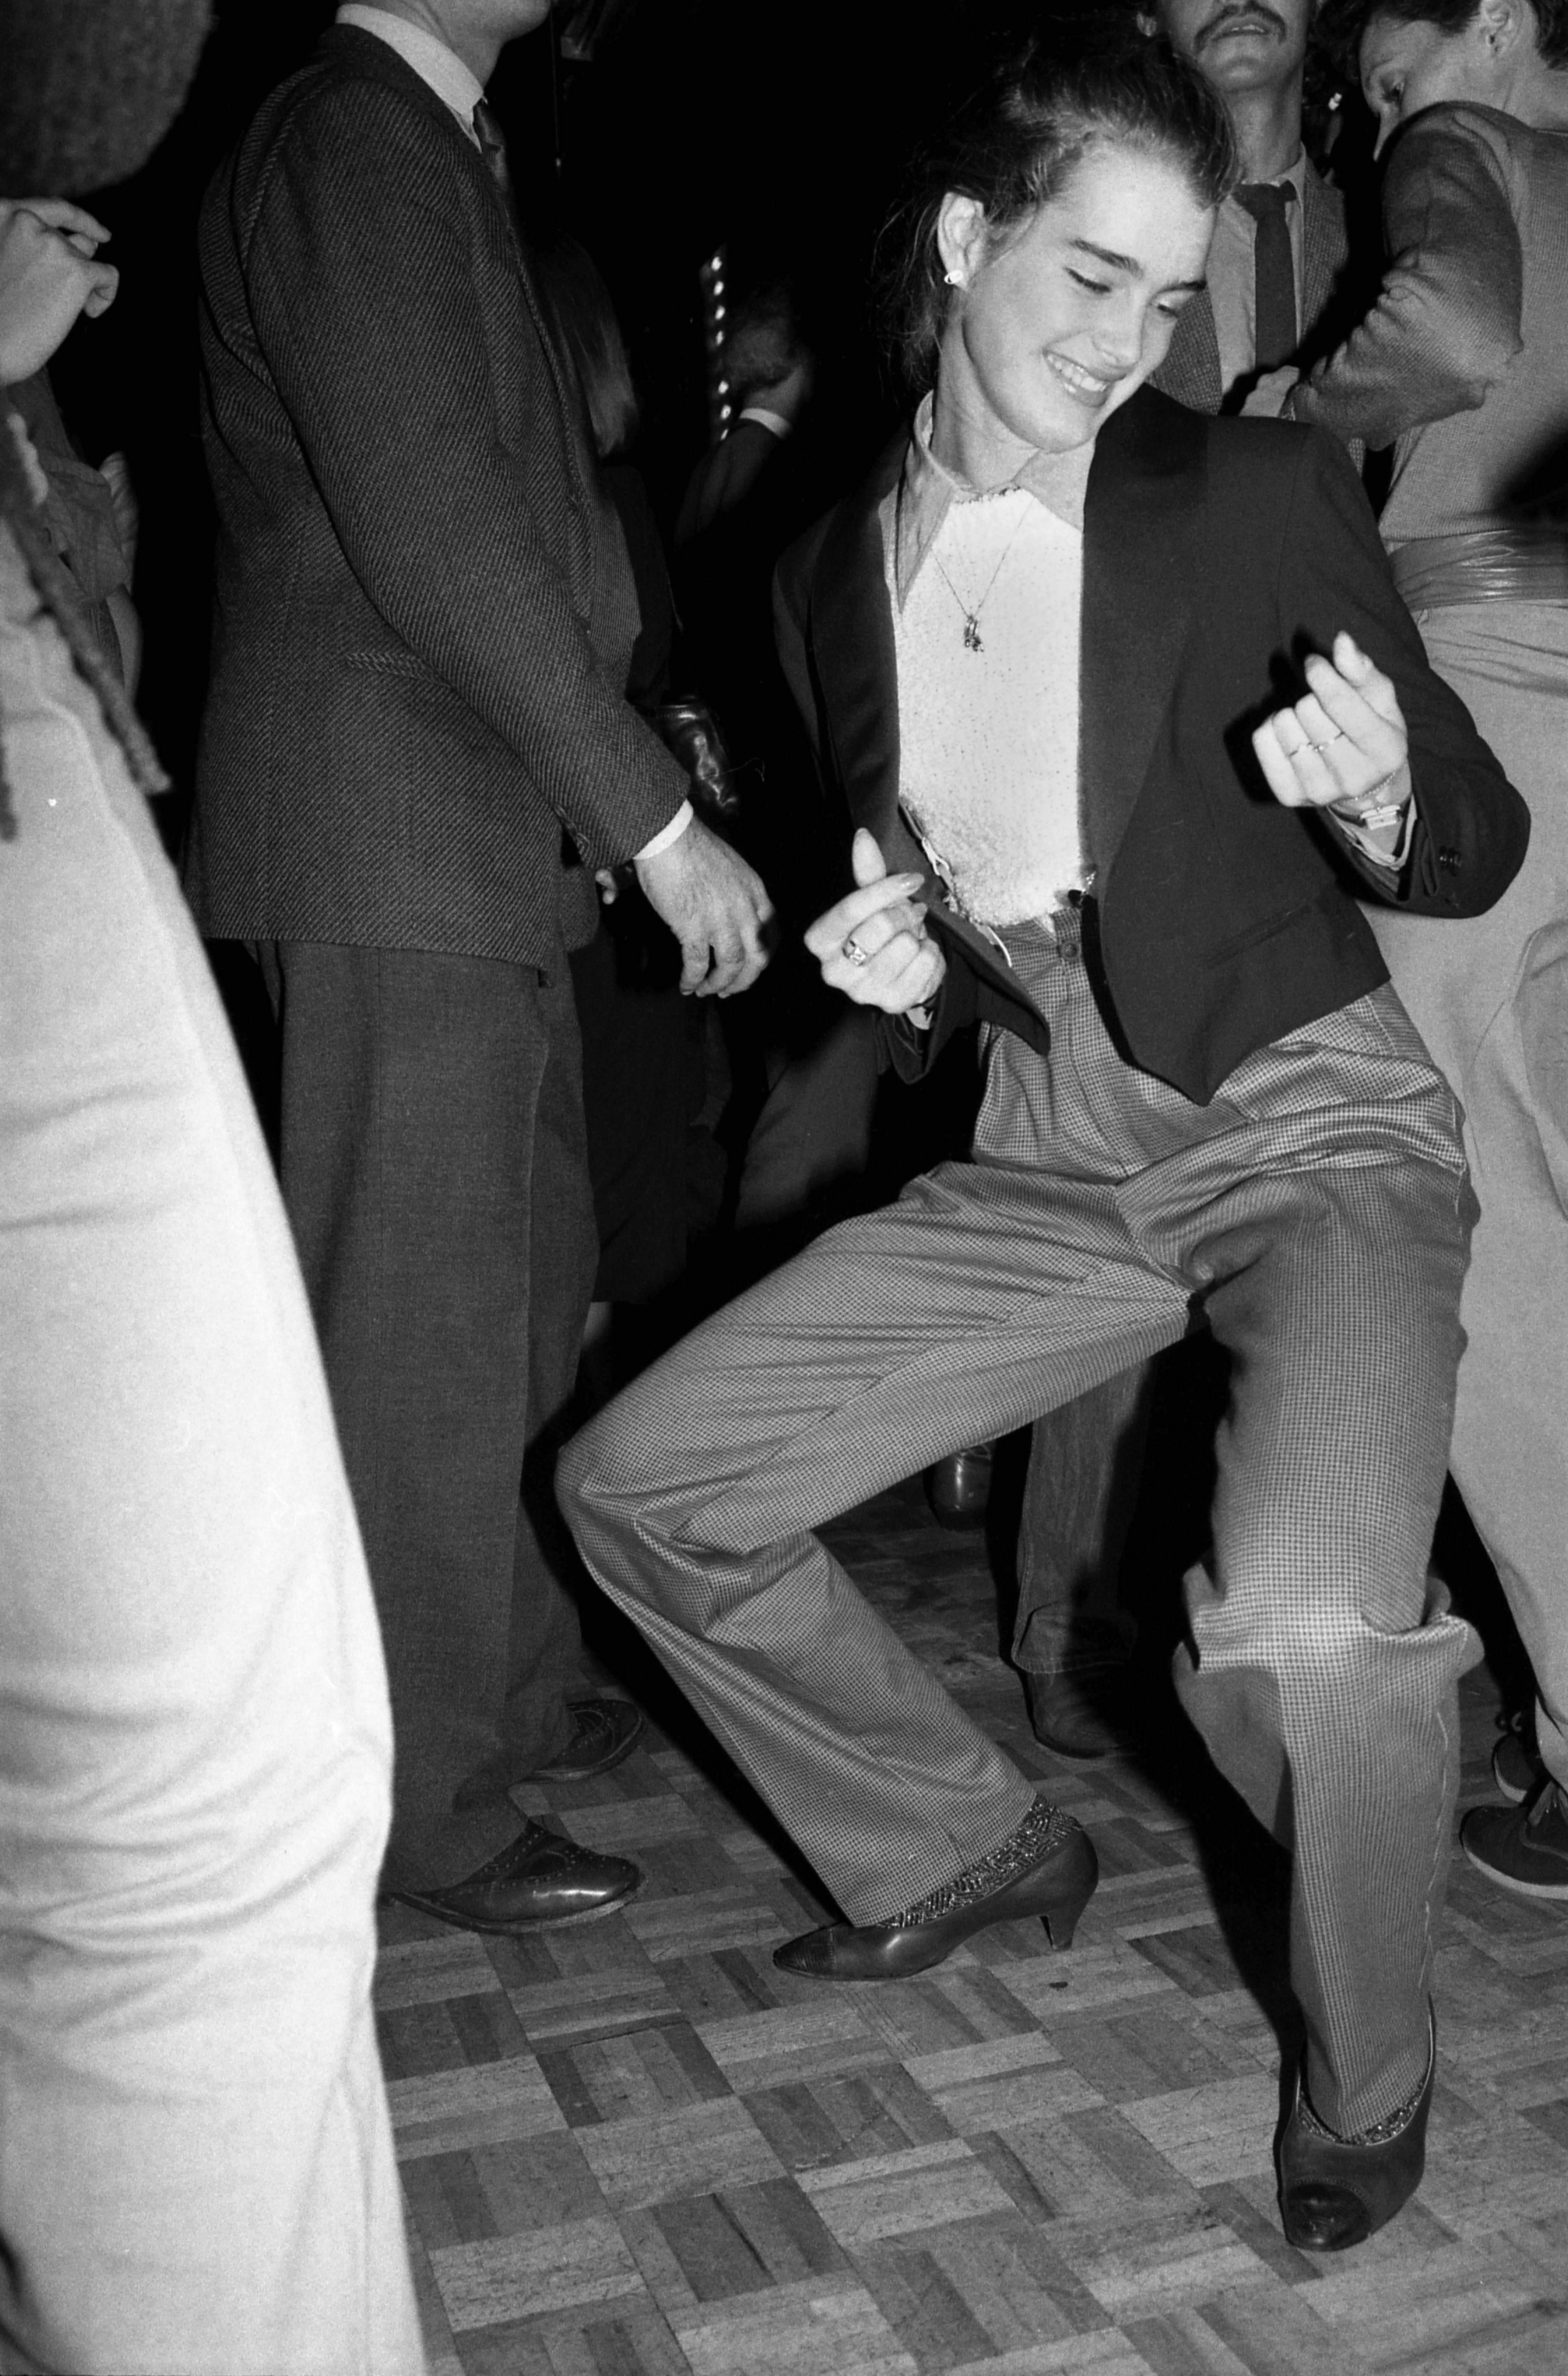 Brooke shields dansant dans une veste de costume et un pantalon au studio 54 en 1979